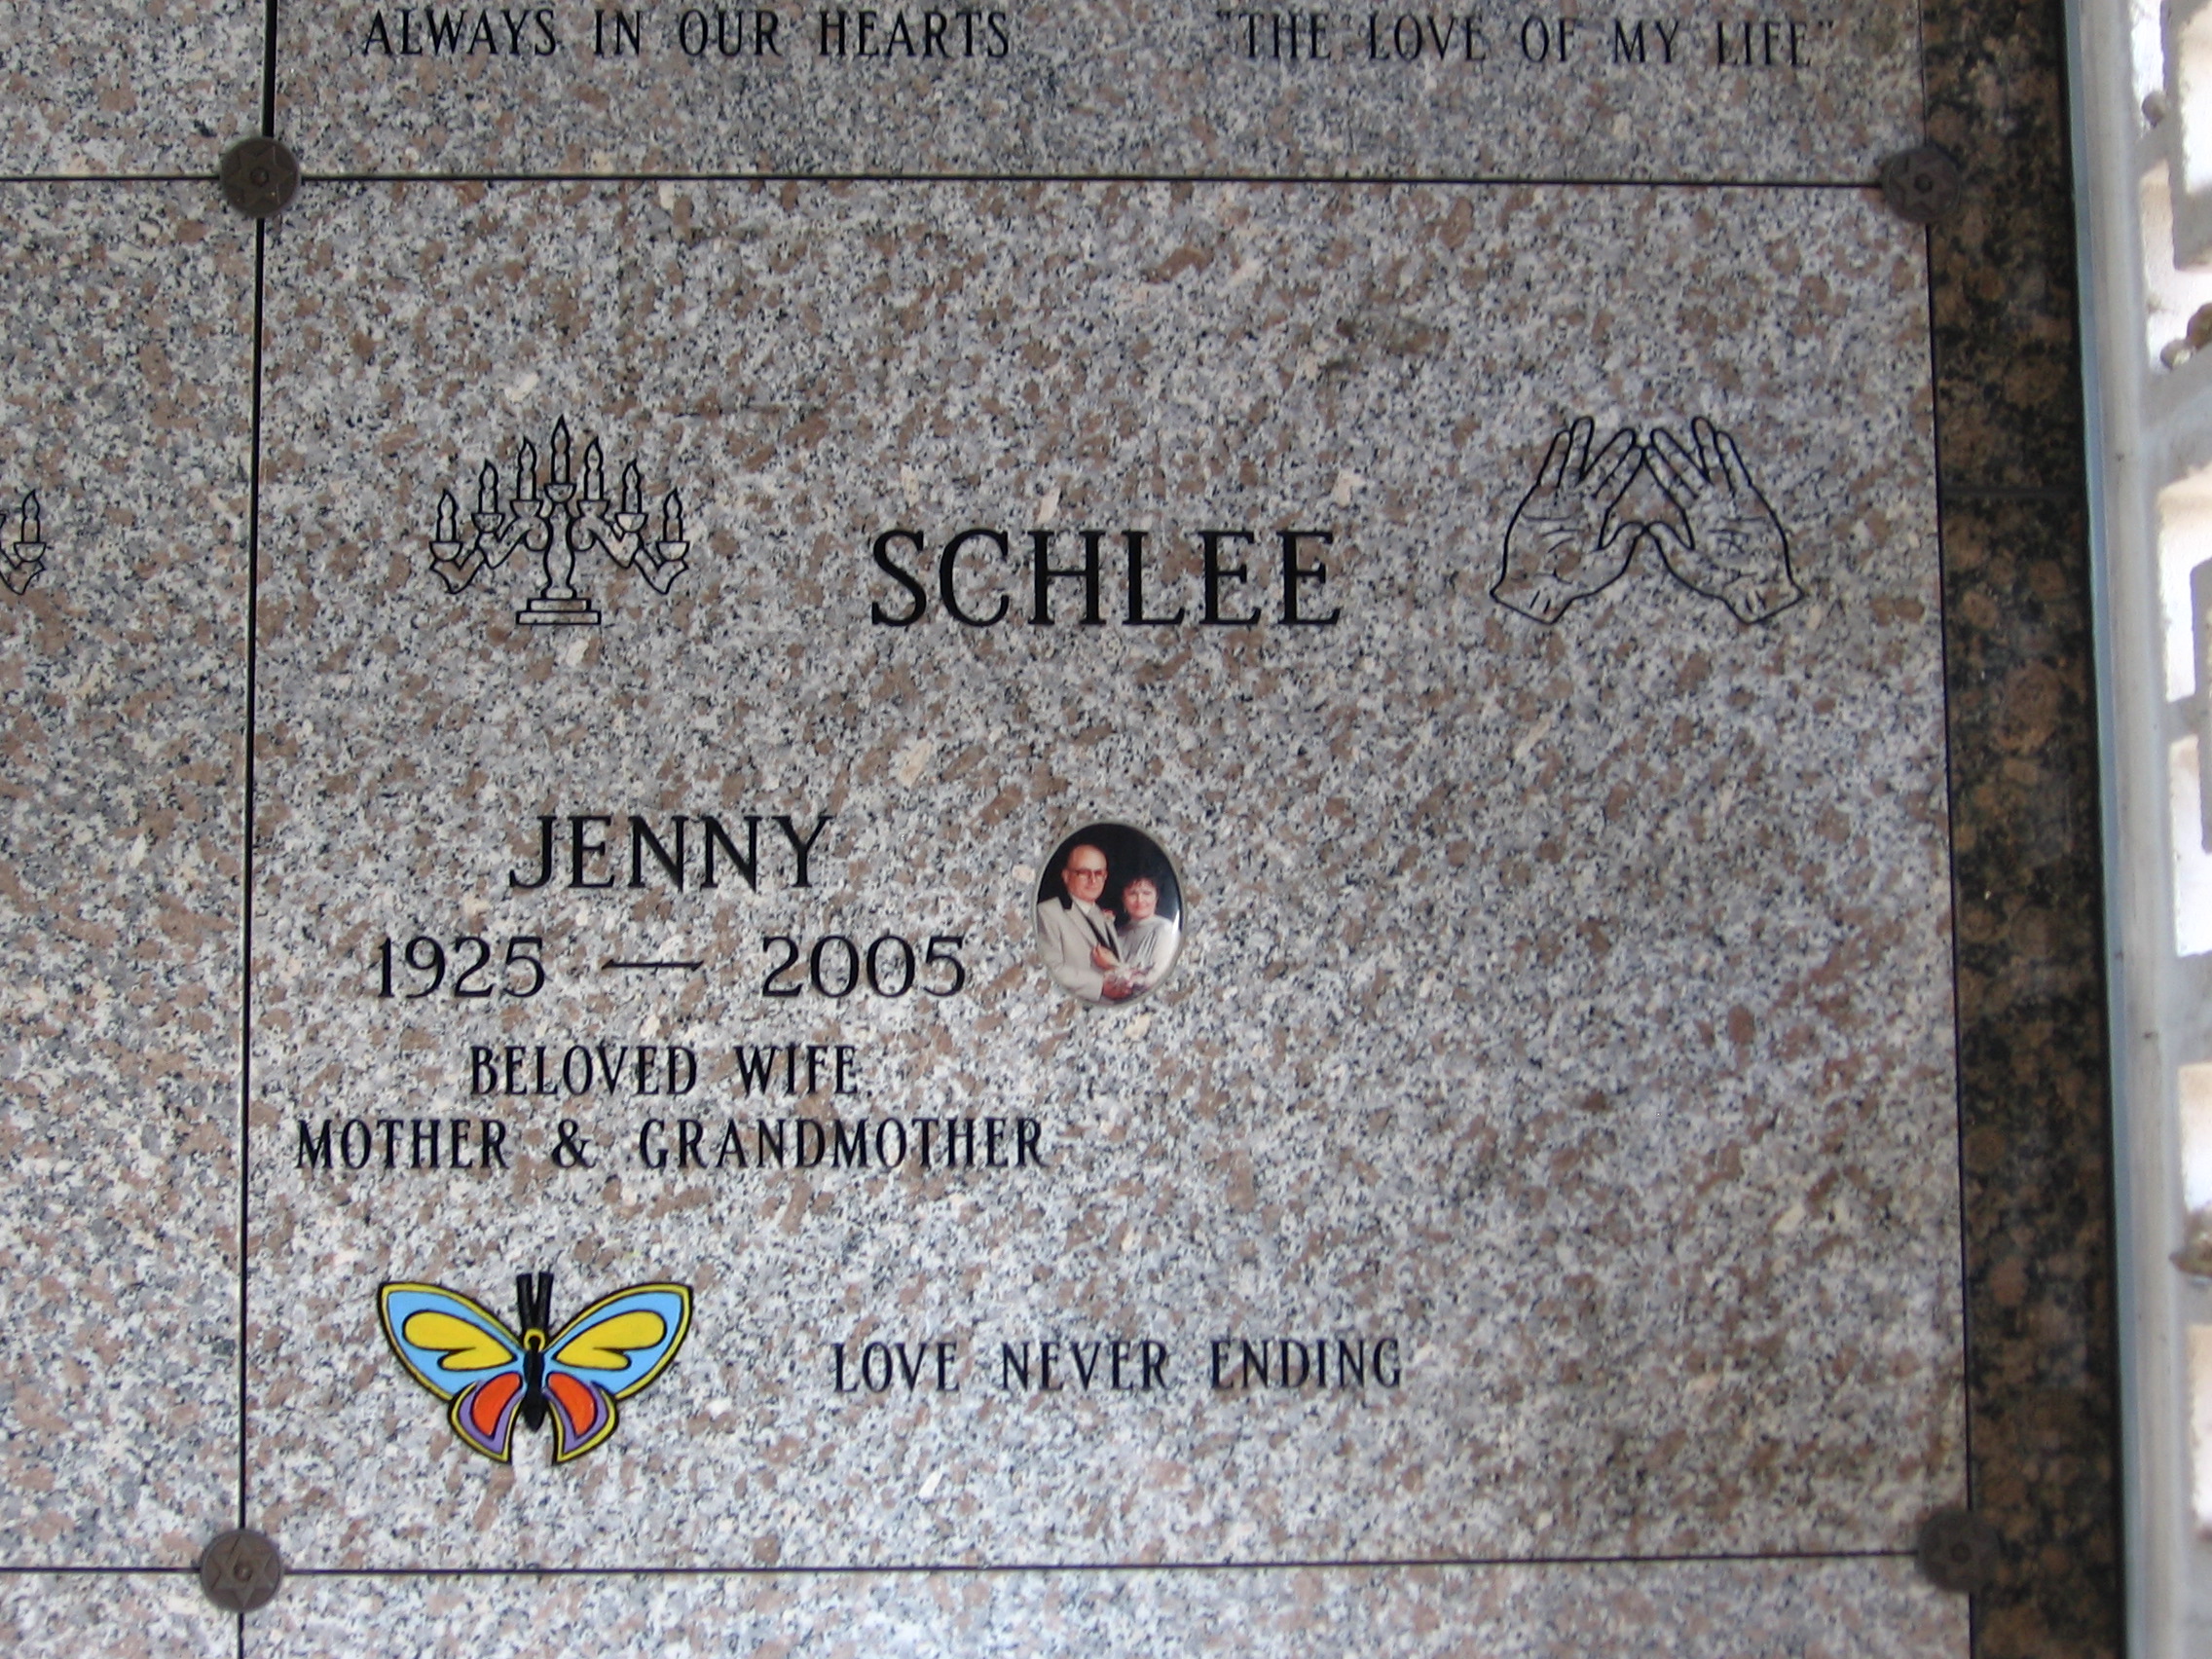 Jenny Schlee